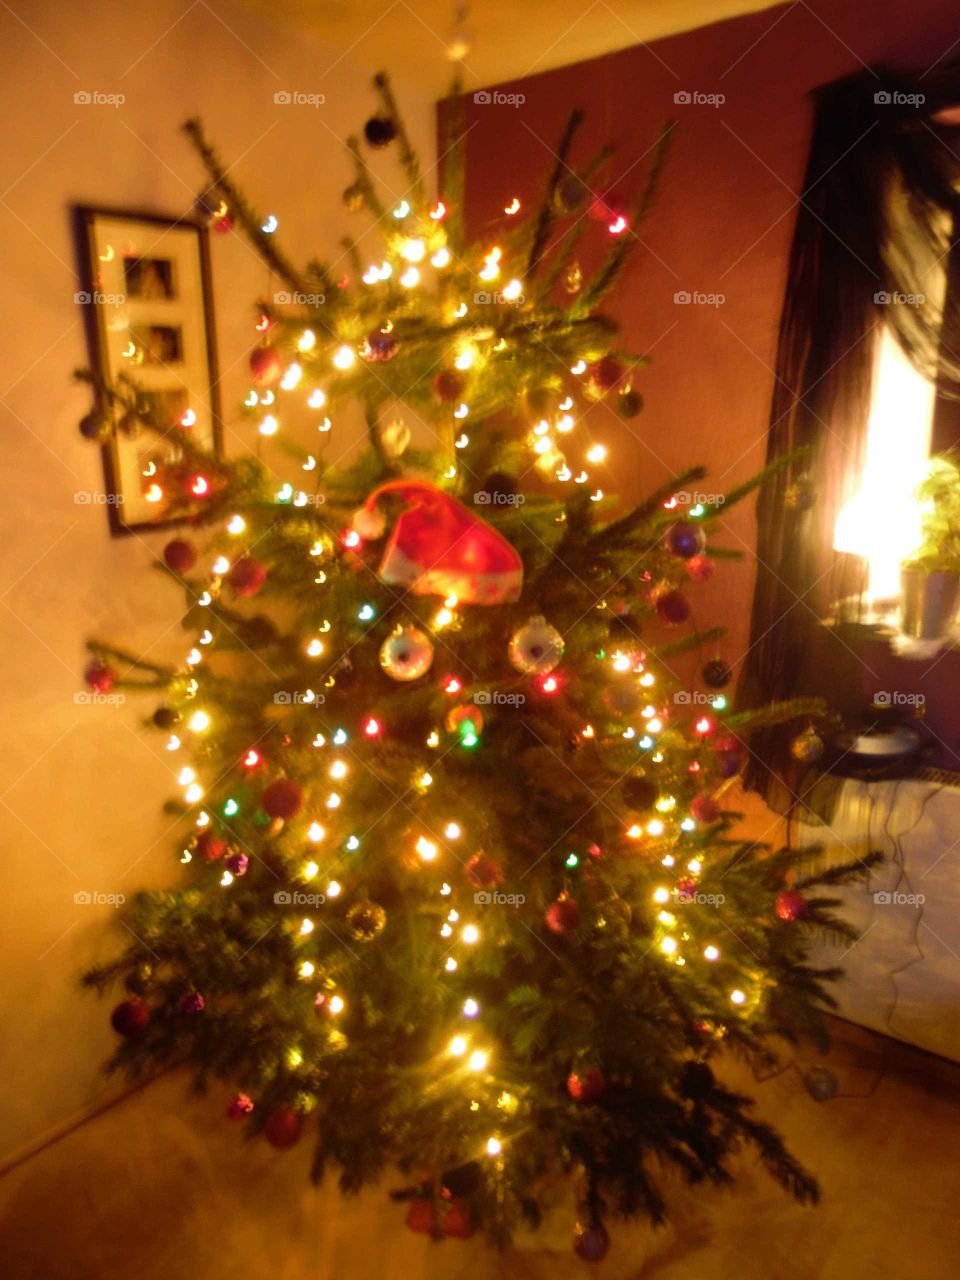 Weihnachtsbaum mit Augen. Christmas tree with eyes.